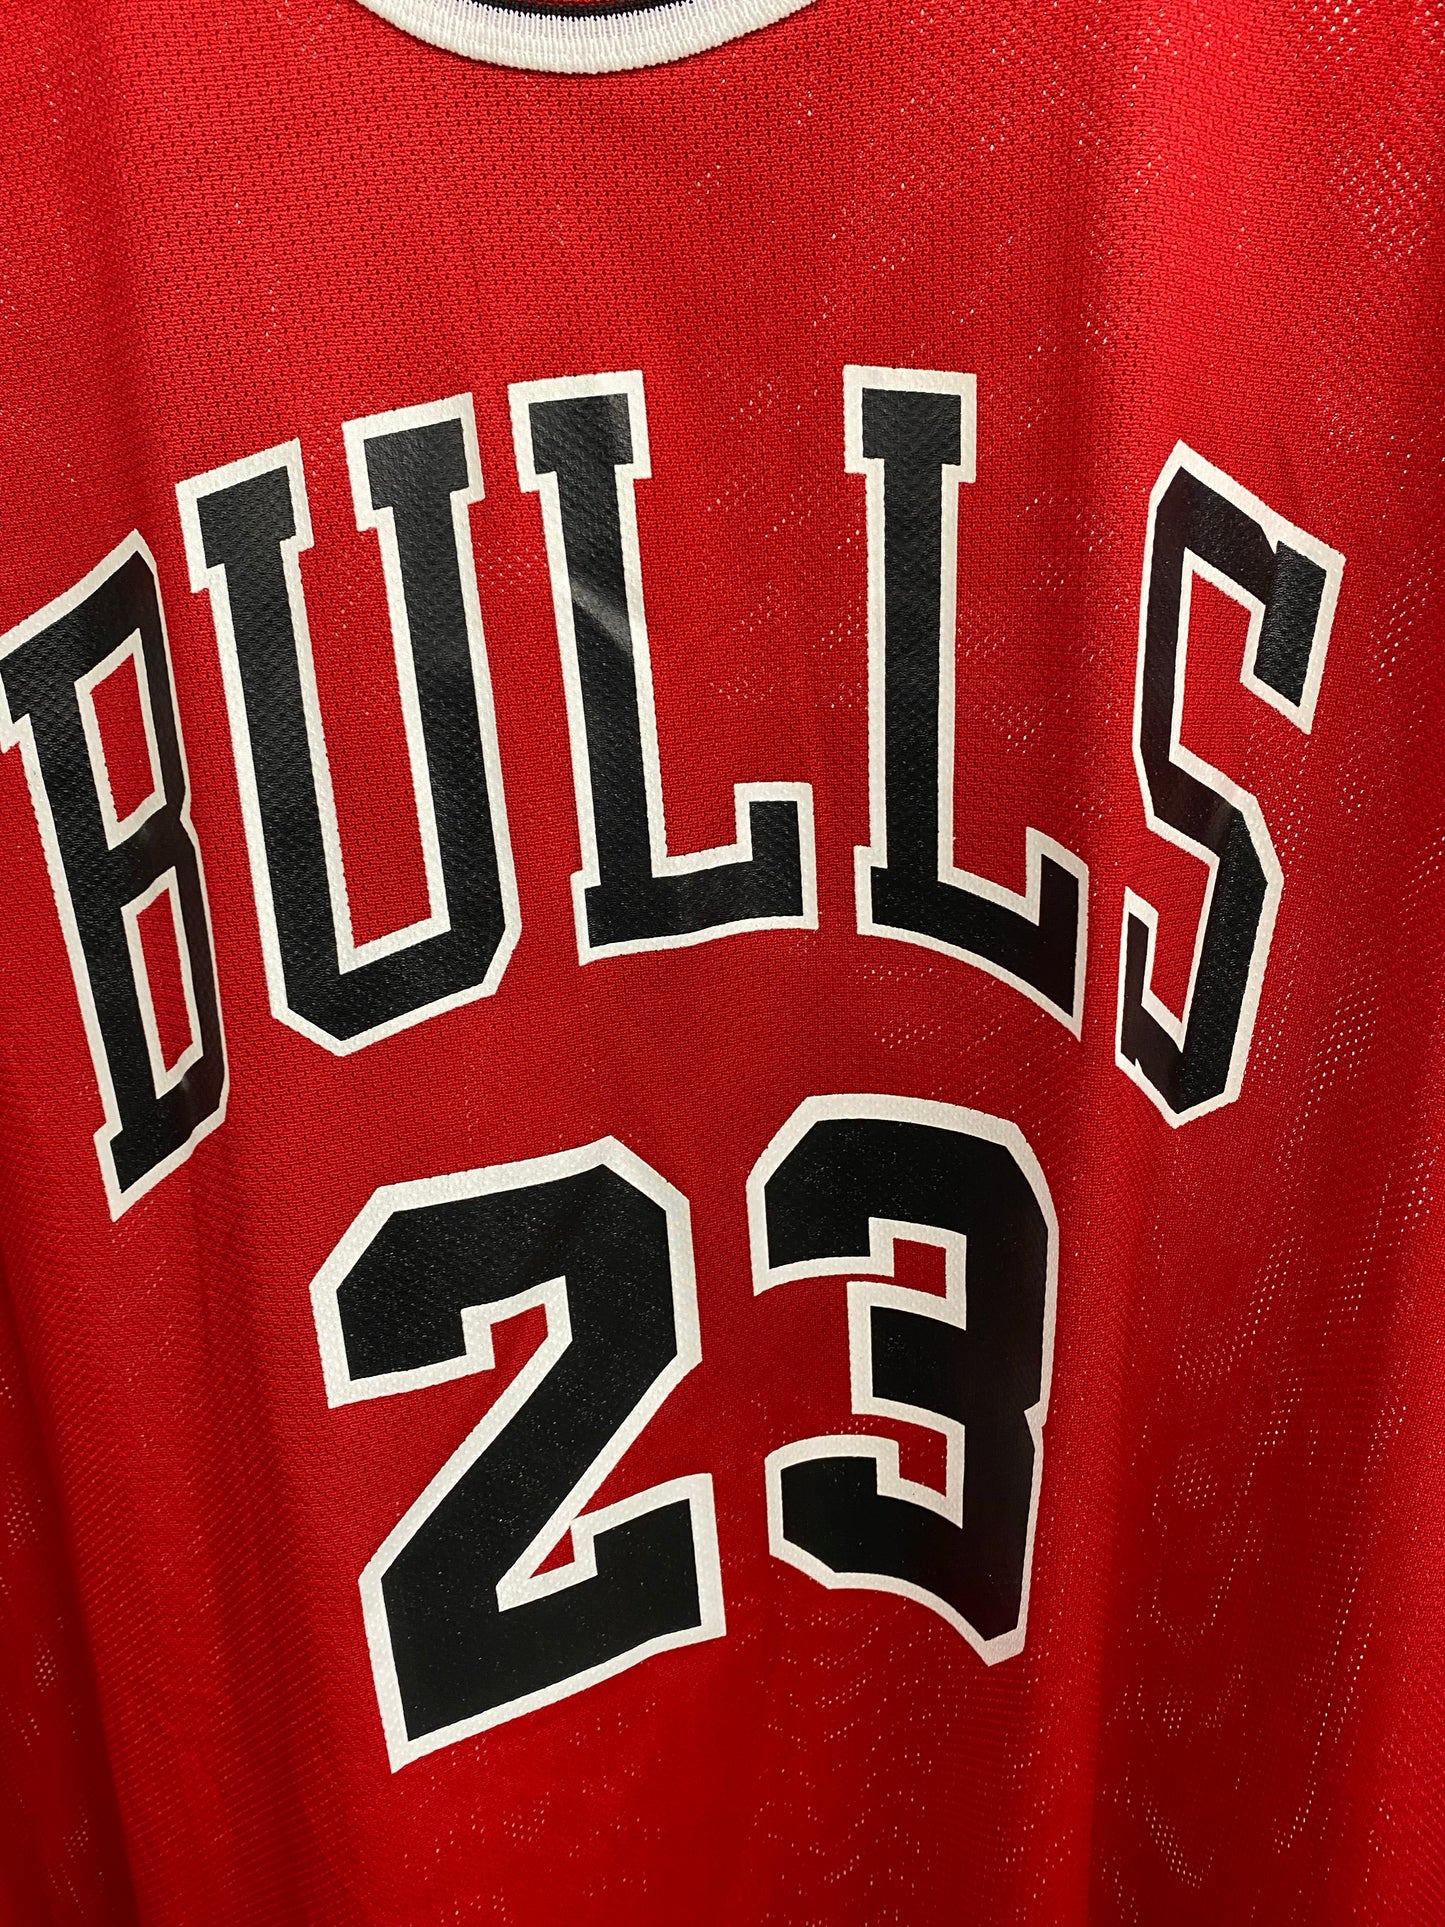 VTG #23 Red Bulls Jordan Jersey SZ XXL